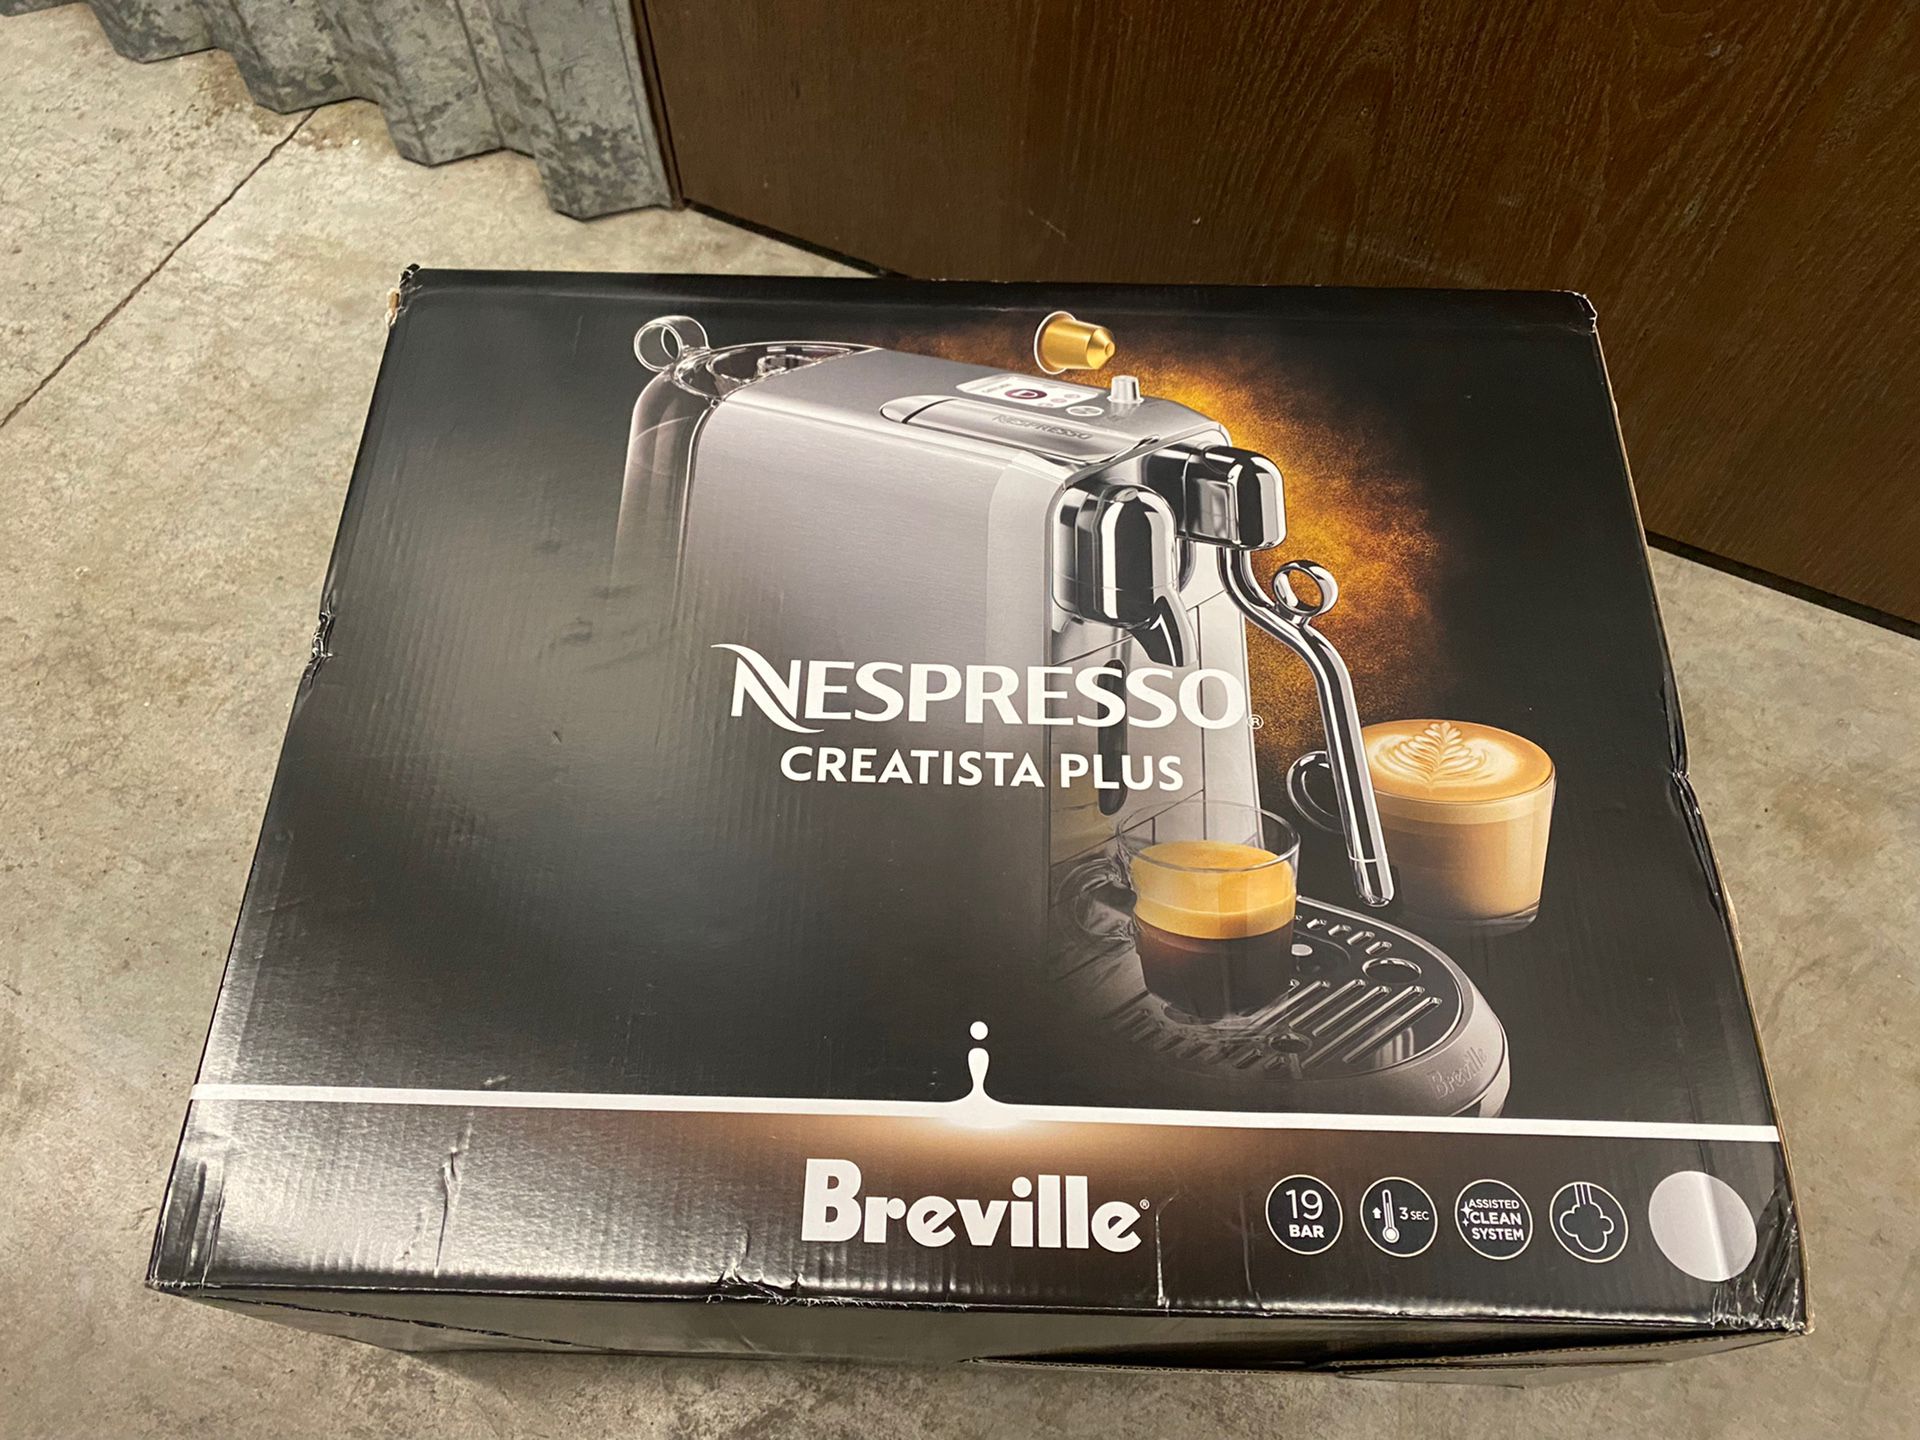 Breville Nespresso Creatista Plus